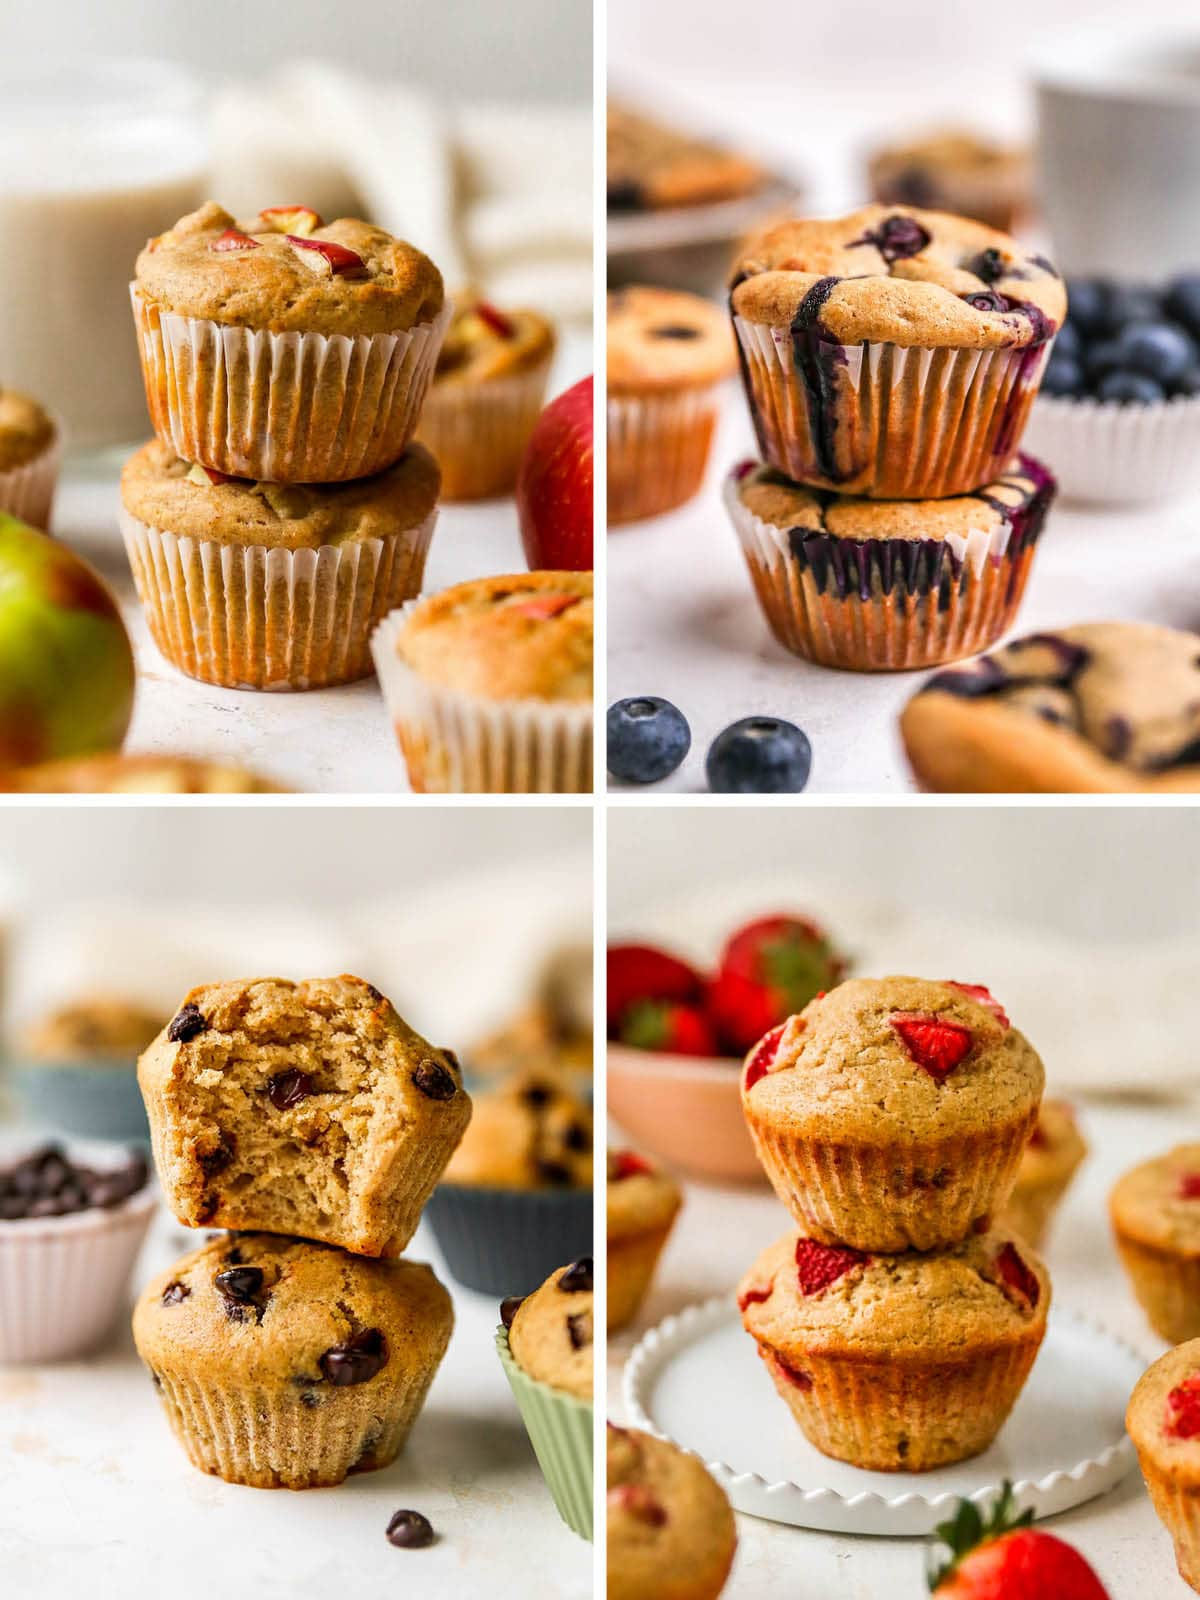 Fotos de 4 muffins diferentes de iogurte: